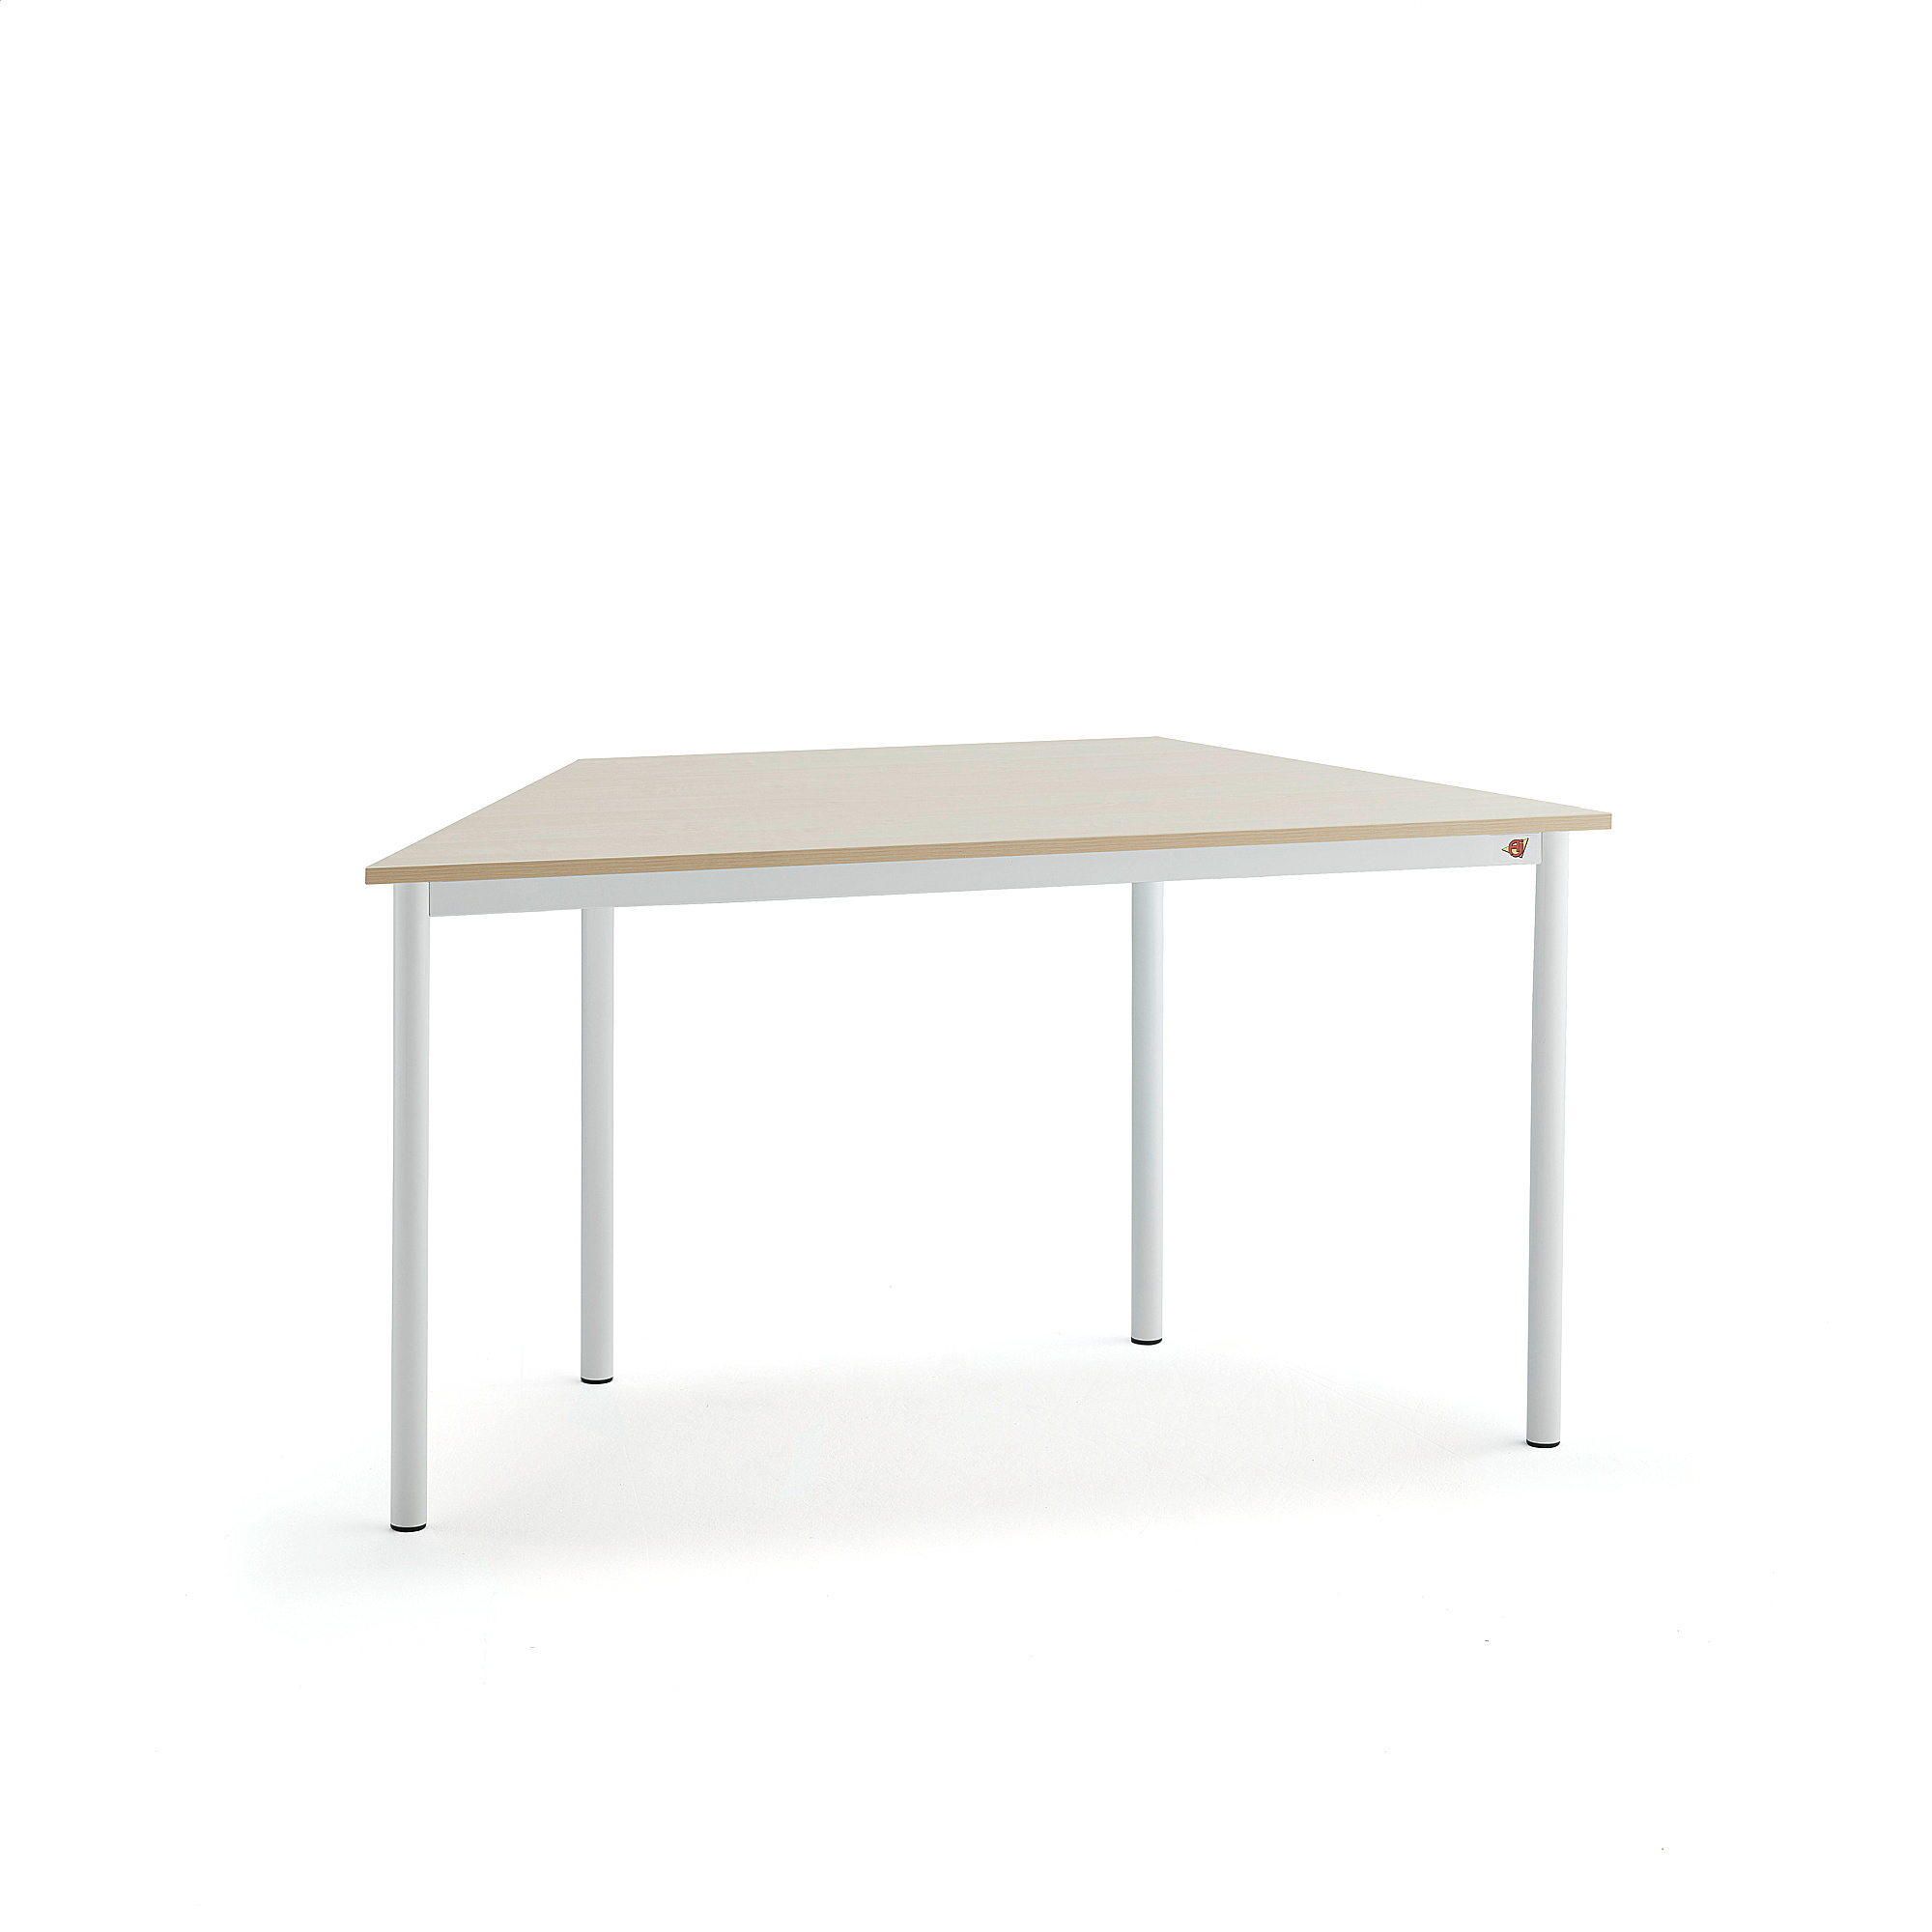 Stůl SONITUS TRAPETS, 1200x600x720 mm, bílé nohy, HPL deska tlumící hluk, bříza